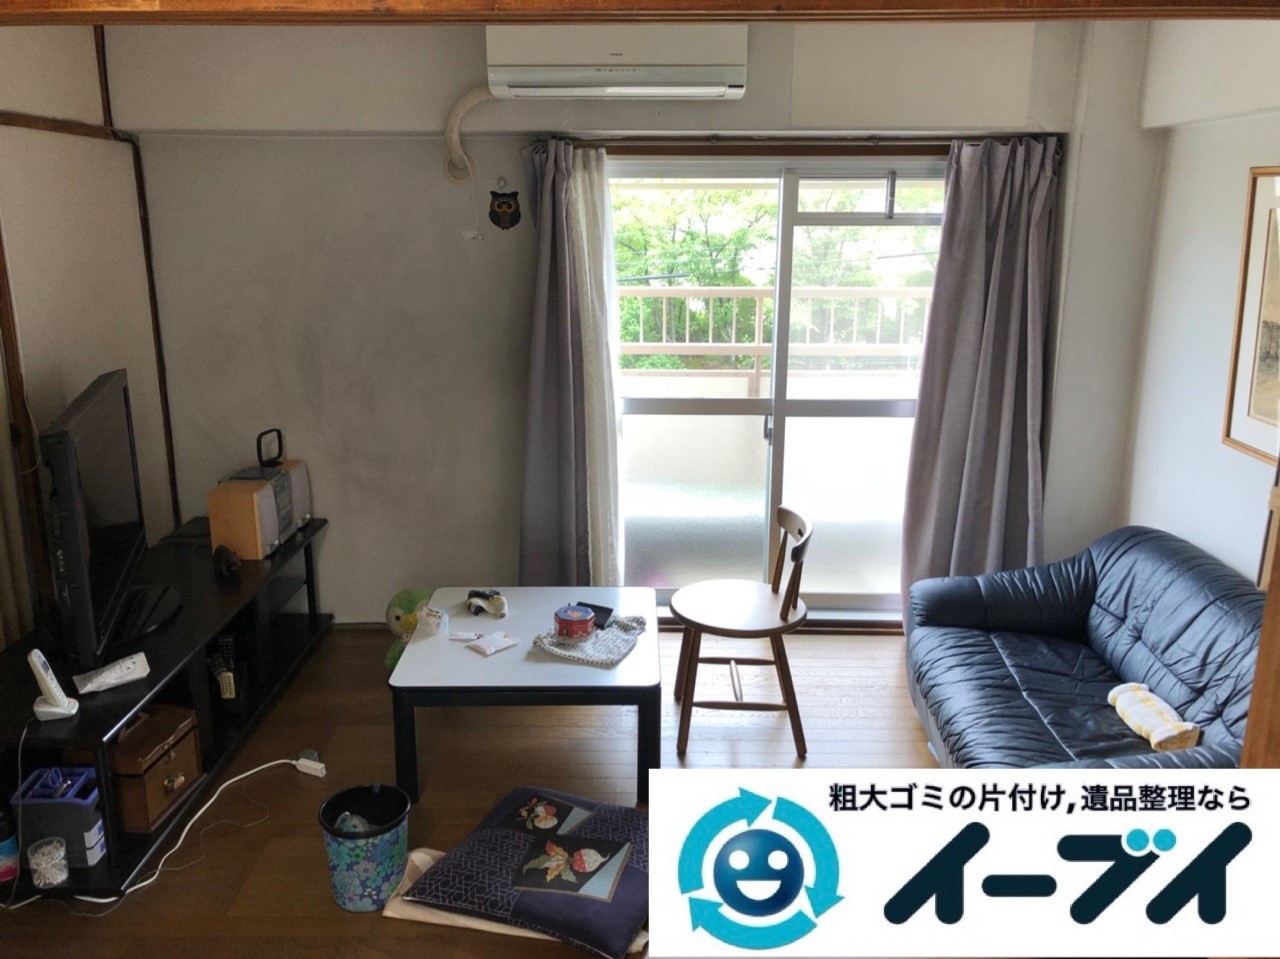 2018年12月7日大阪府大阪市港区で施設入居に伴い家財道具の処分片付け。写真4